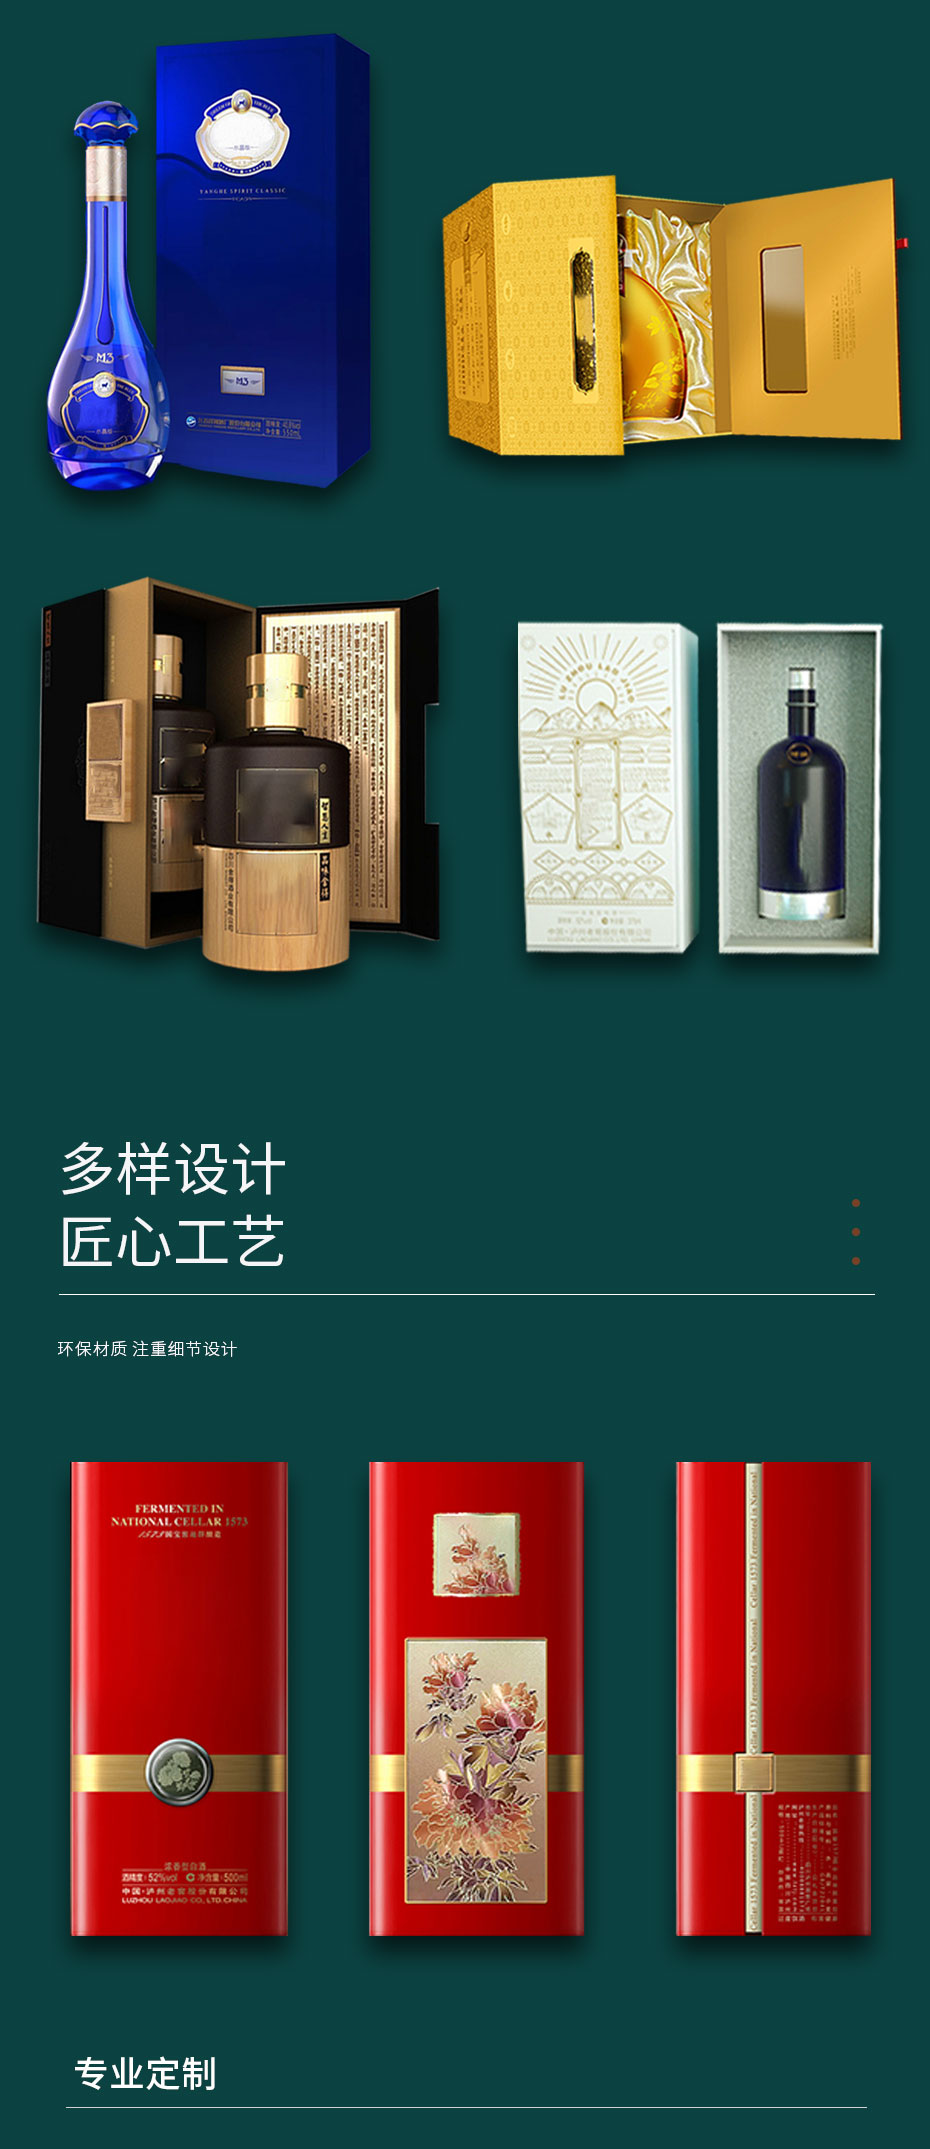 白酒沐鸣2注册彩盒设计公司